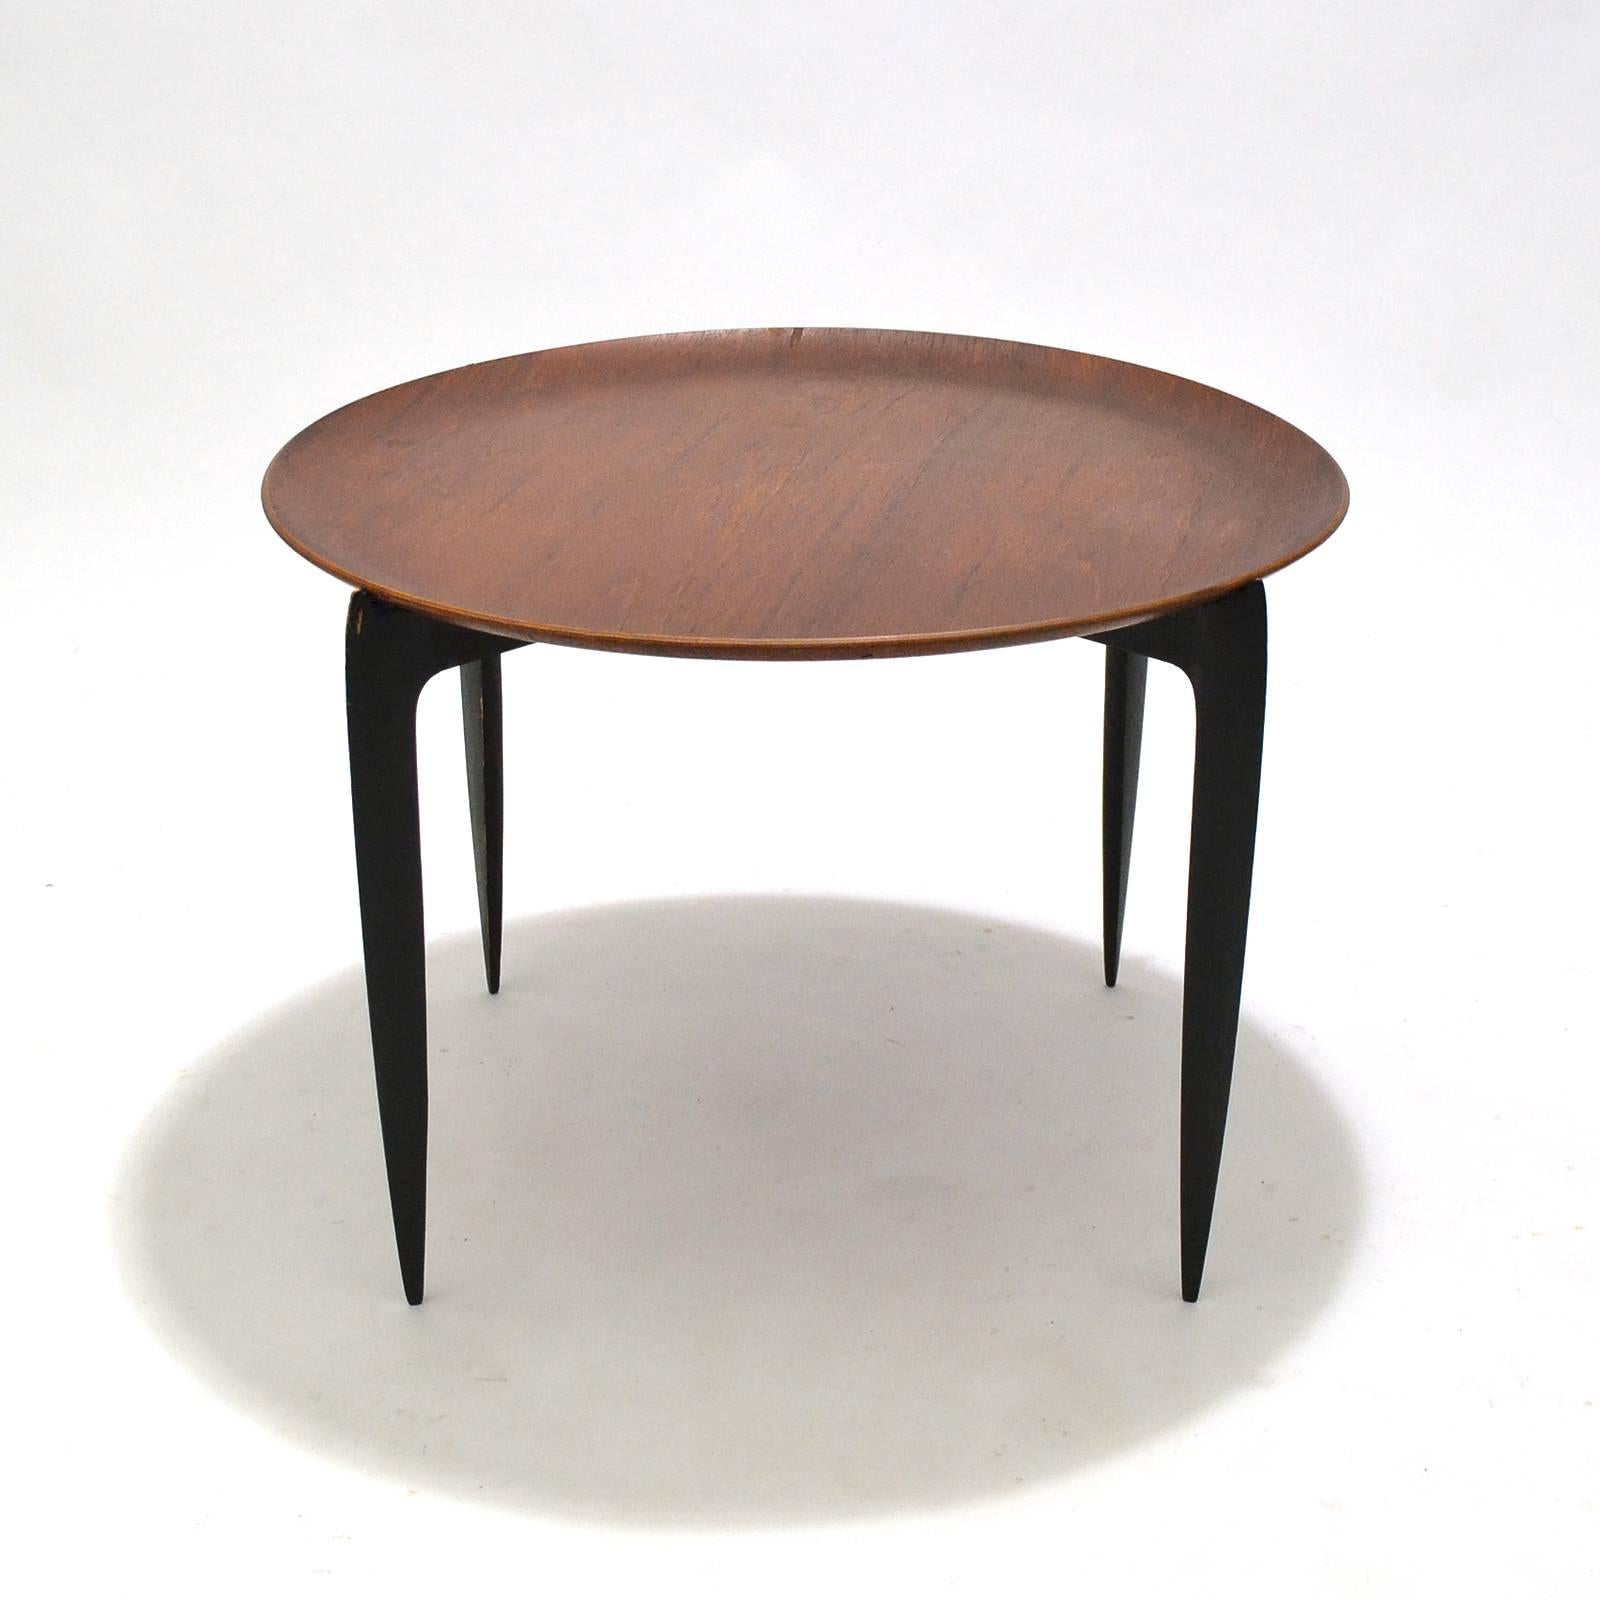 Dieser von Svend Aage Willumsen & H. Engholm entworfene und von Fritz Hansen hergestellte Tisch mit Tablettplatte ist leicht, langbeinig und unglaublich nützlich. Er lässt sich flach zusammenklappen und bei Nichtgebrauch einfach verstauen. In